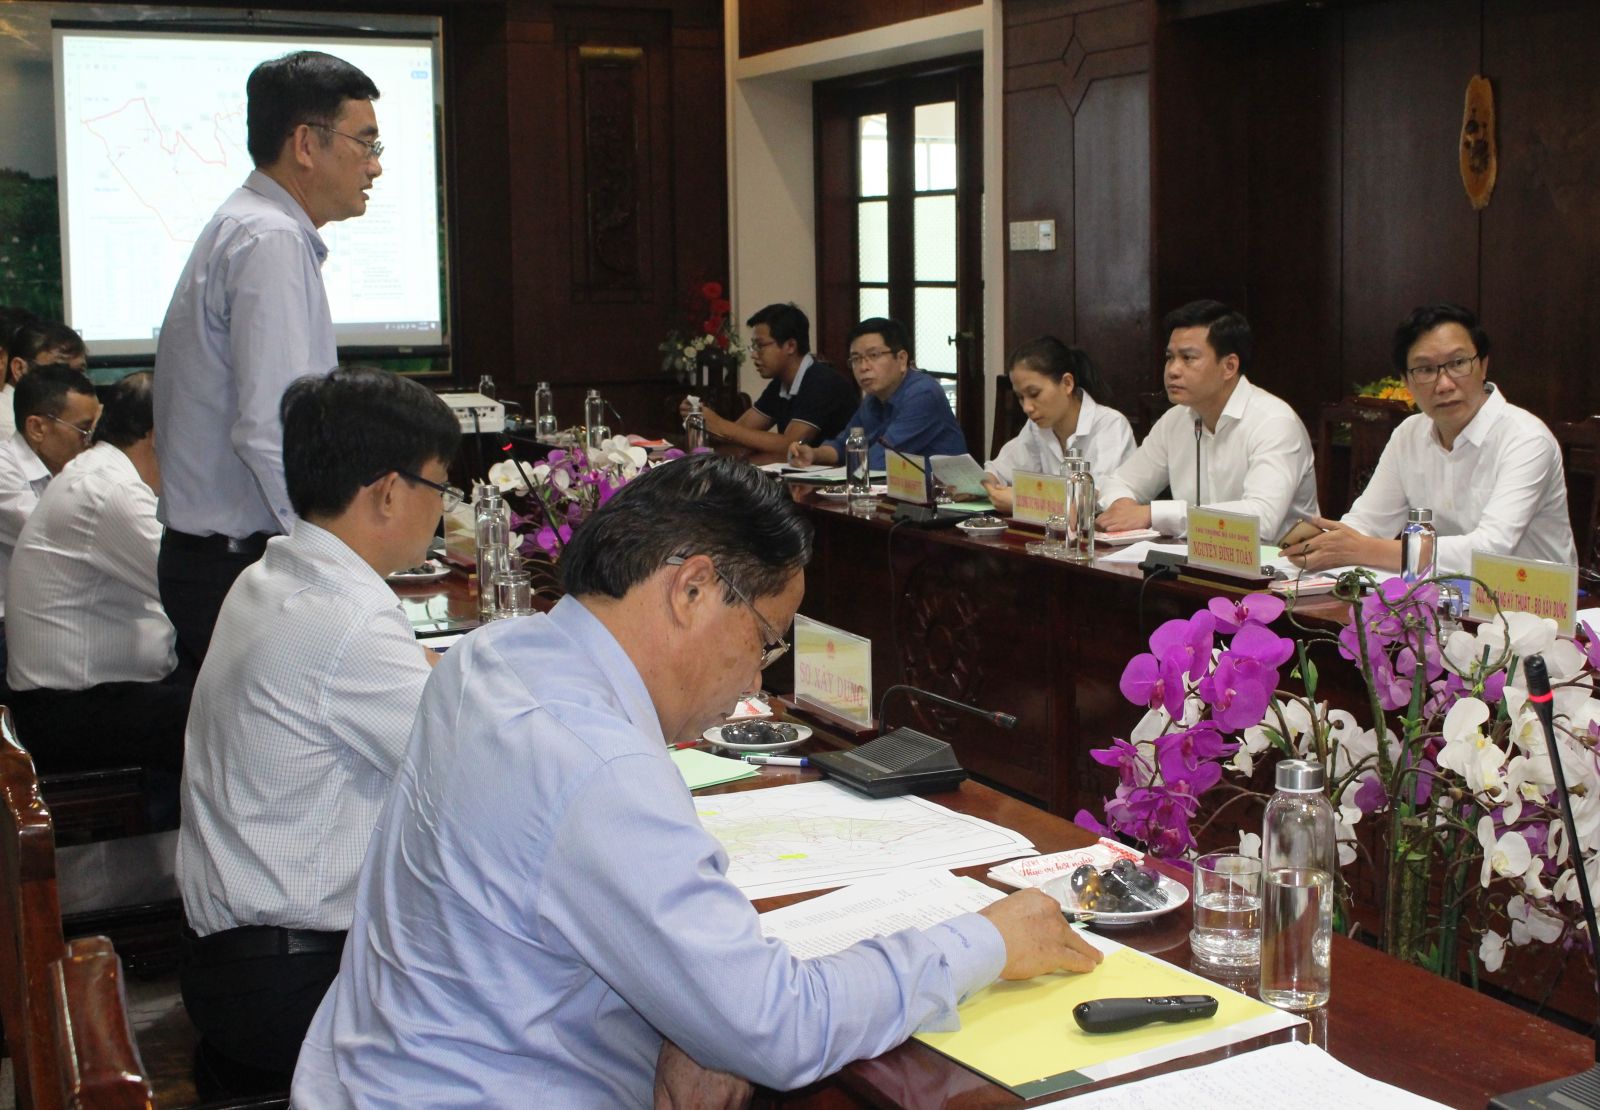  Phó Chủ tịch UBND tỉnh – Phạm Văn Cảnh tiếp và làm việc với đoàn